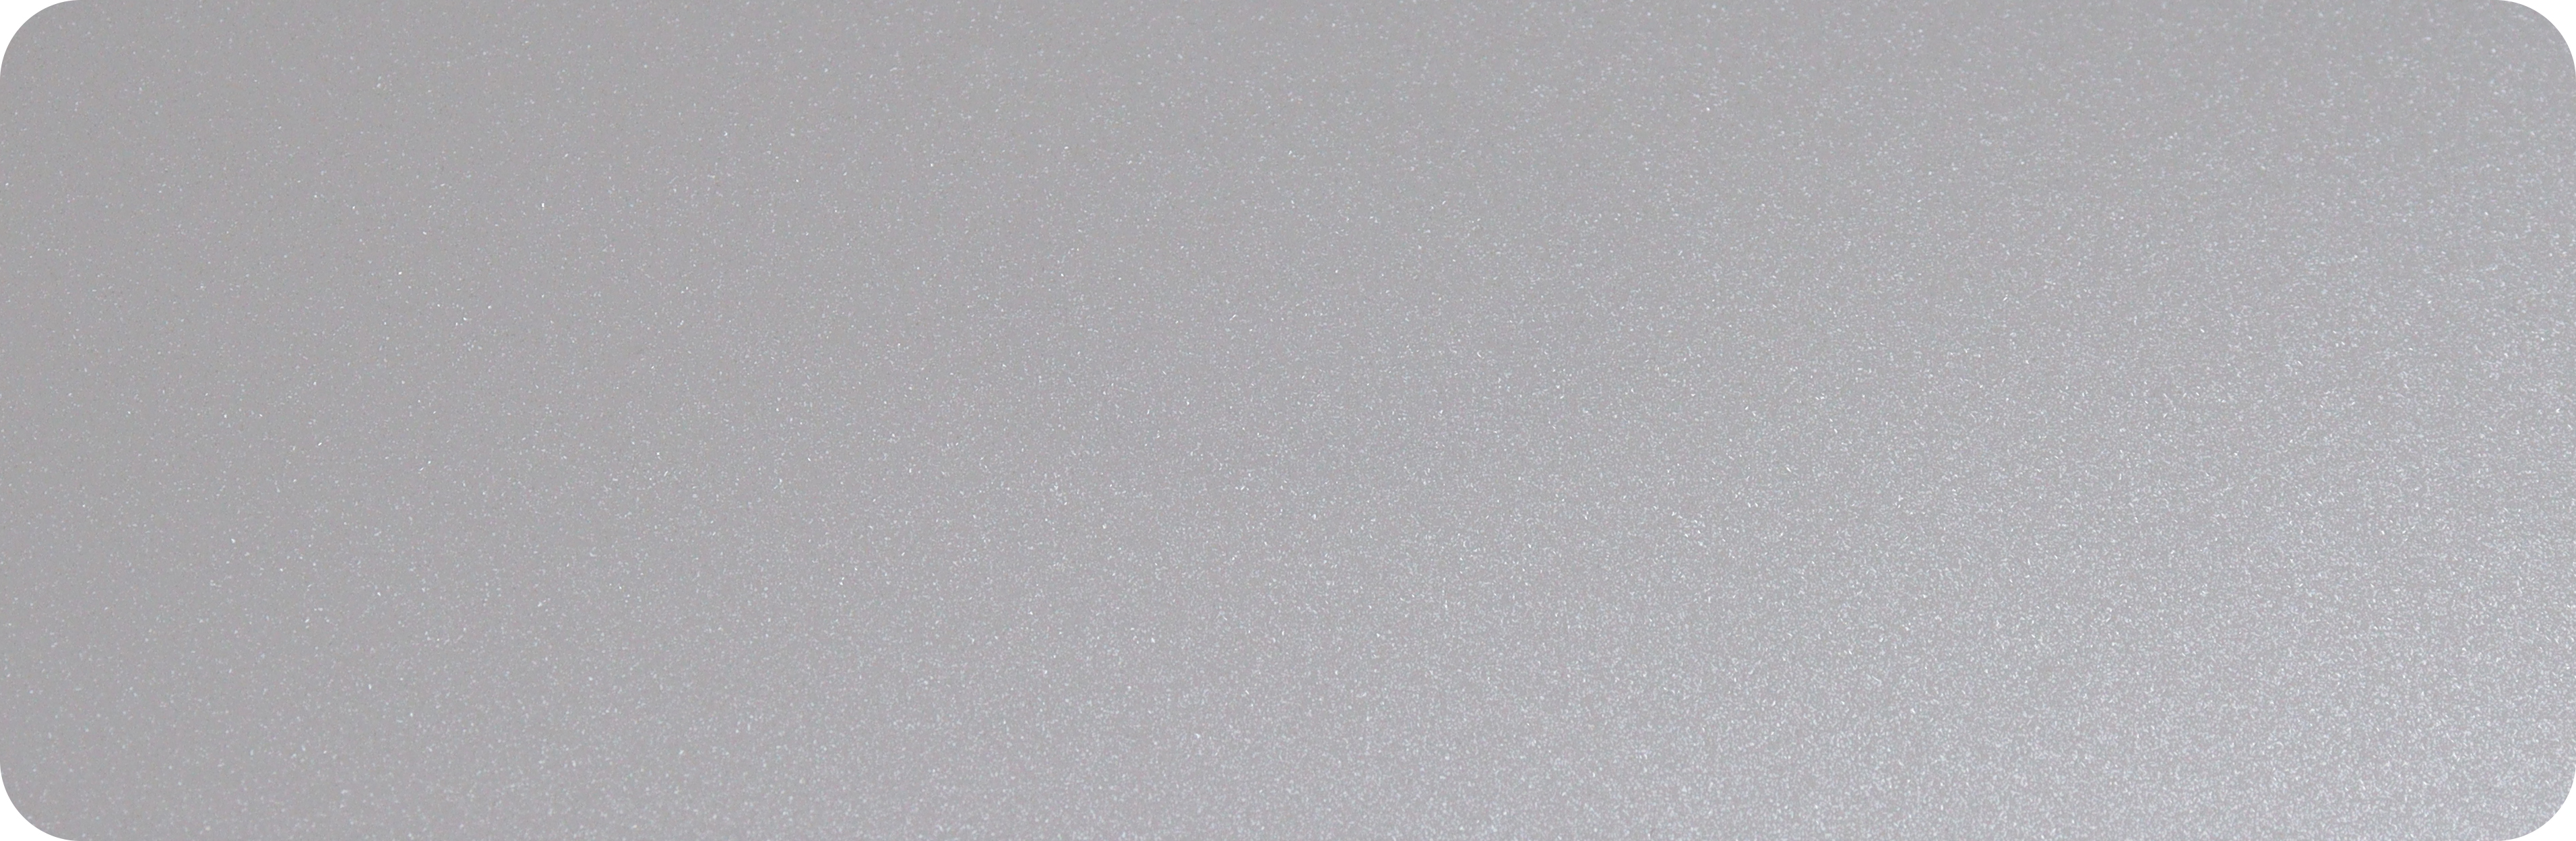 1.TPU钻石白-TPU-ಡೈಮಂಡ್ ವೈಟ್